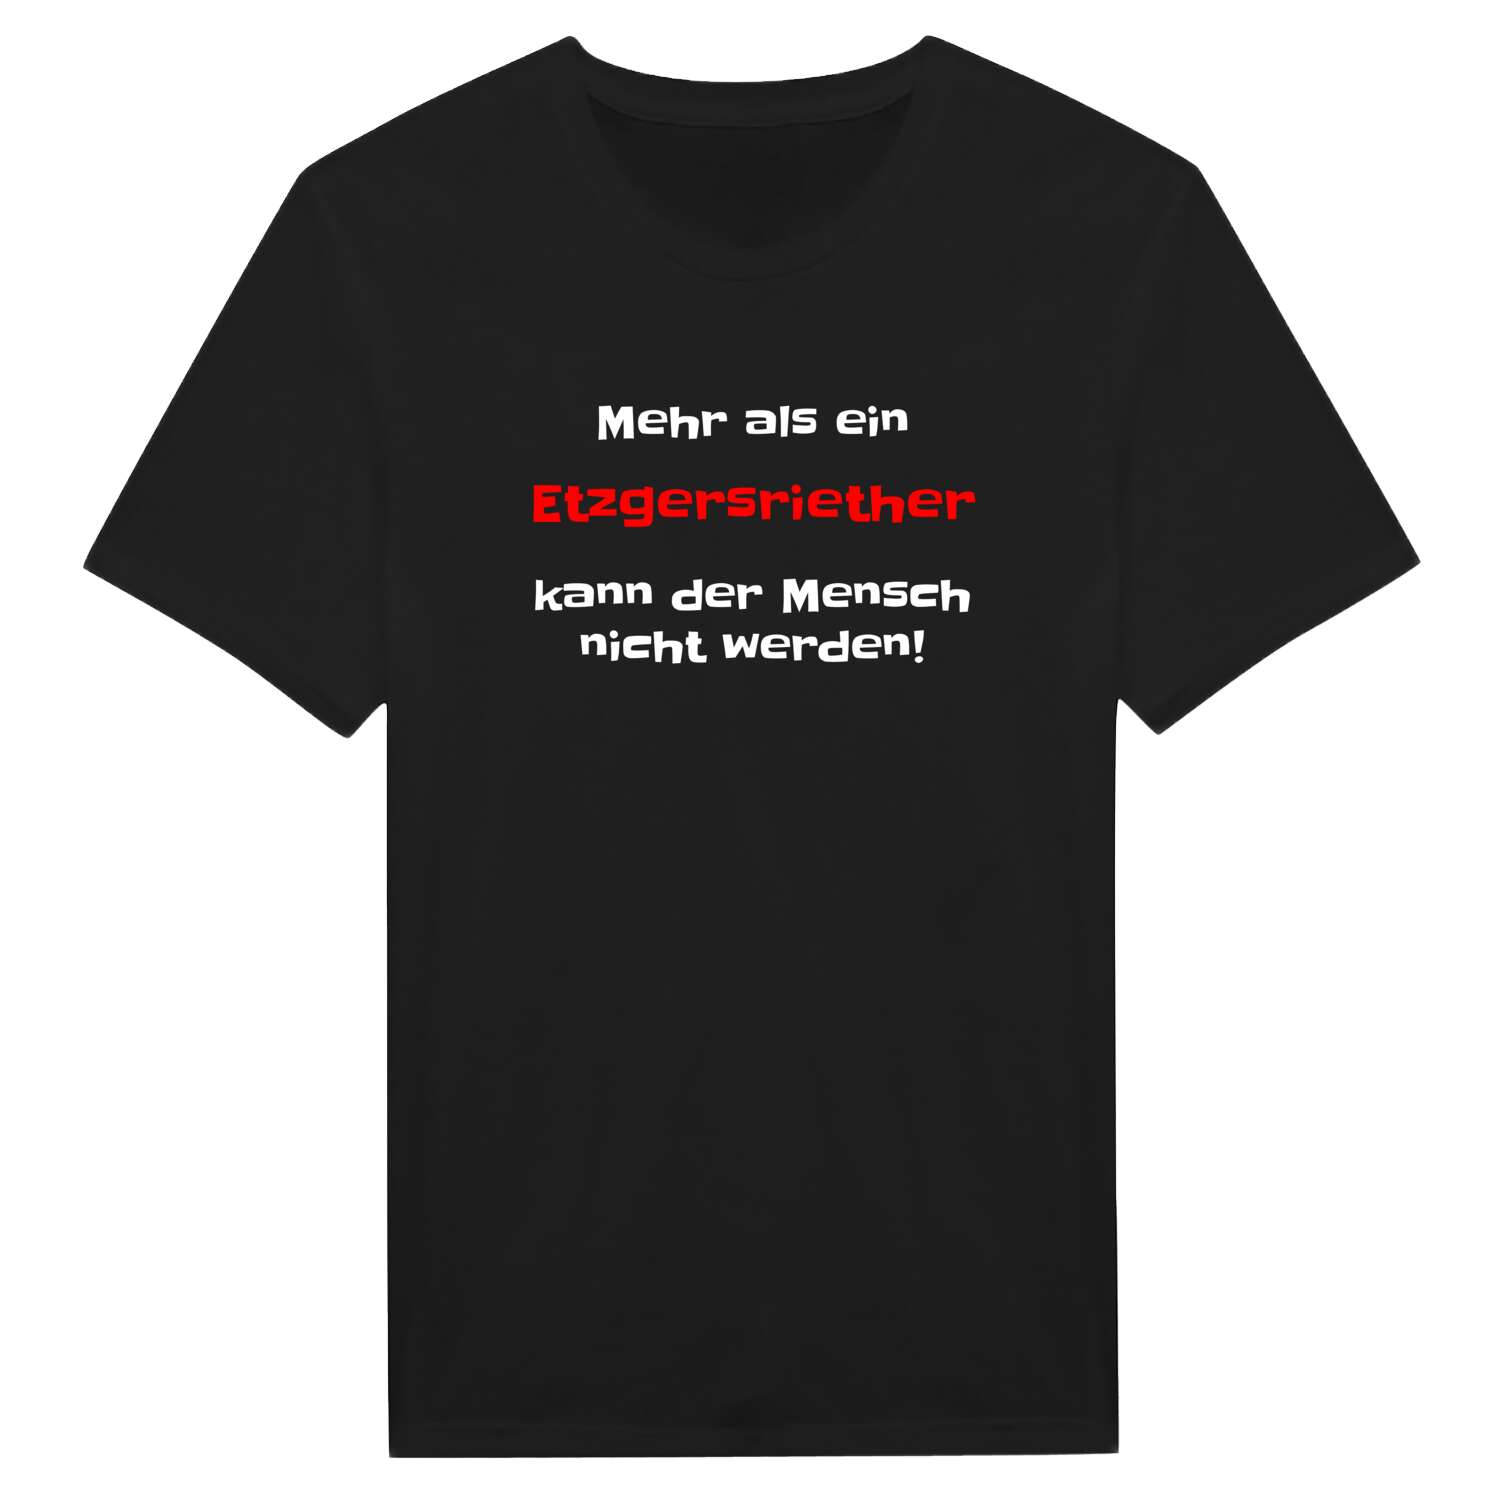 Etzgersrieth T-Shirt »Mehr als ein«